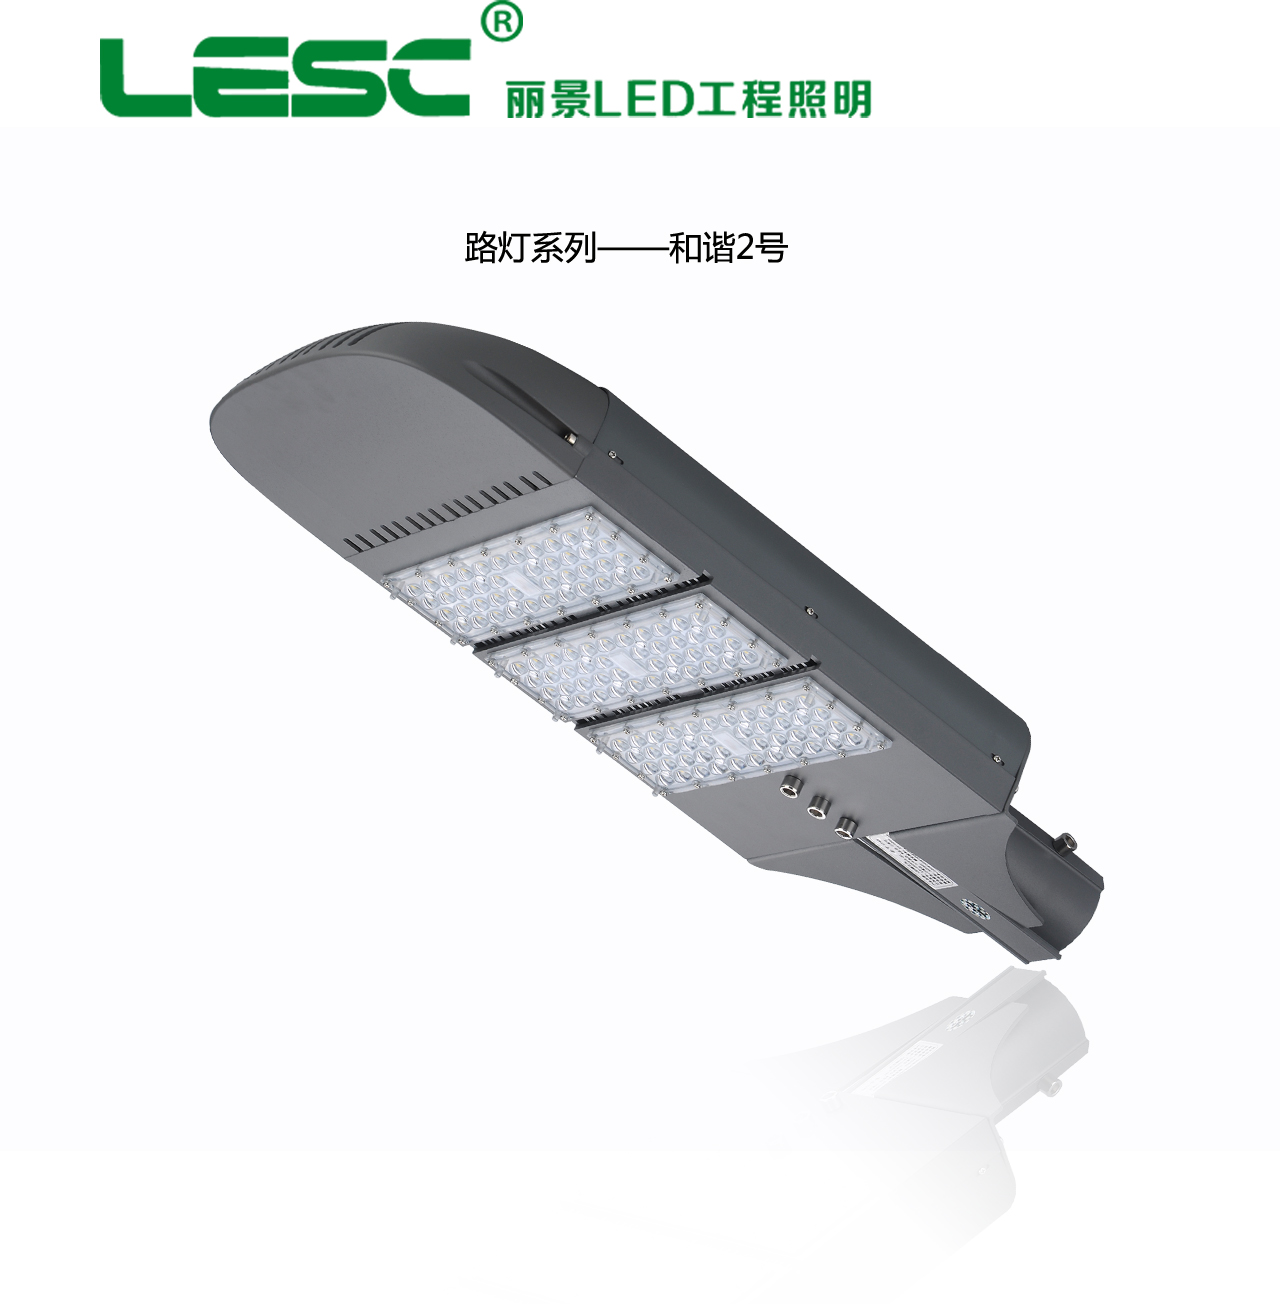 厂家供应大功率LED路灯和谐二号路灯灯头热销新型节能环保路灯系列